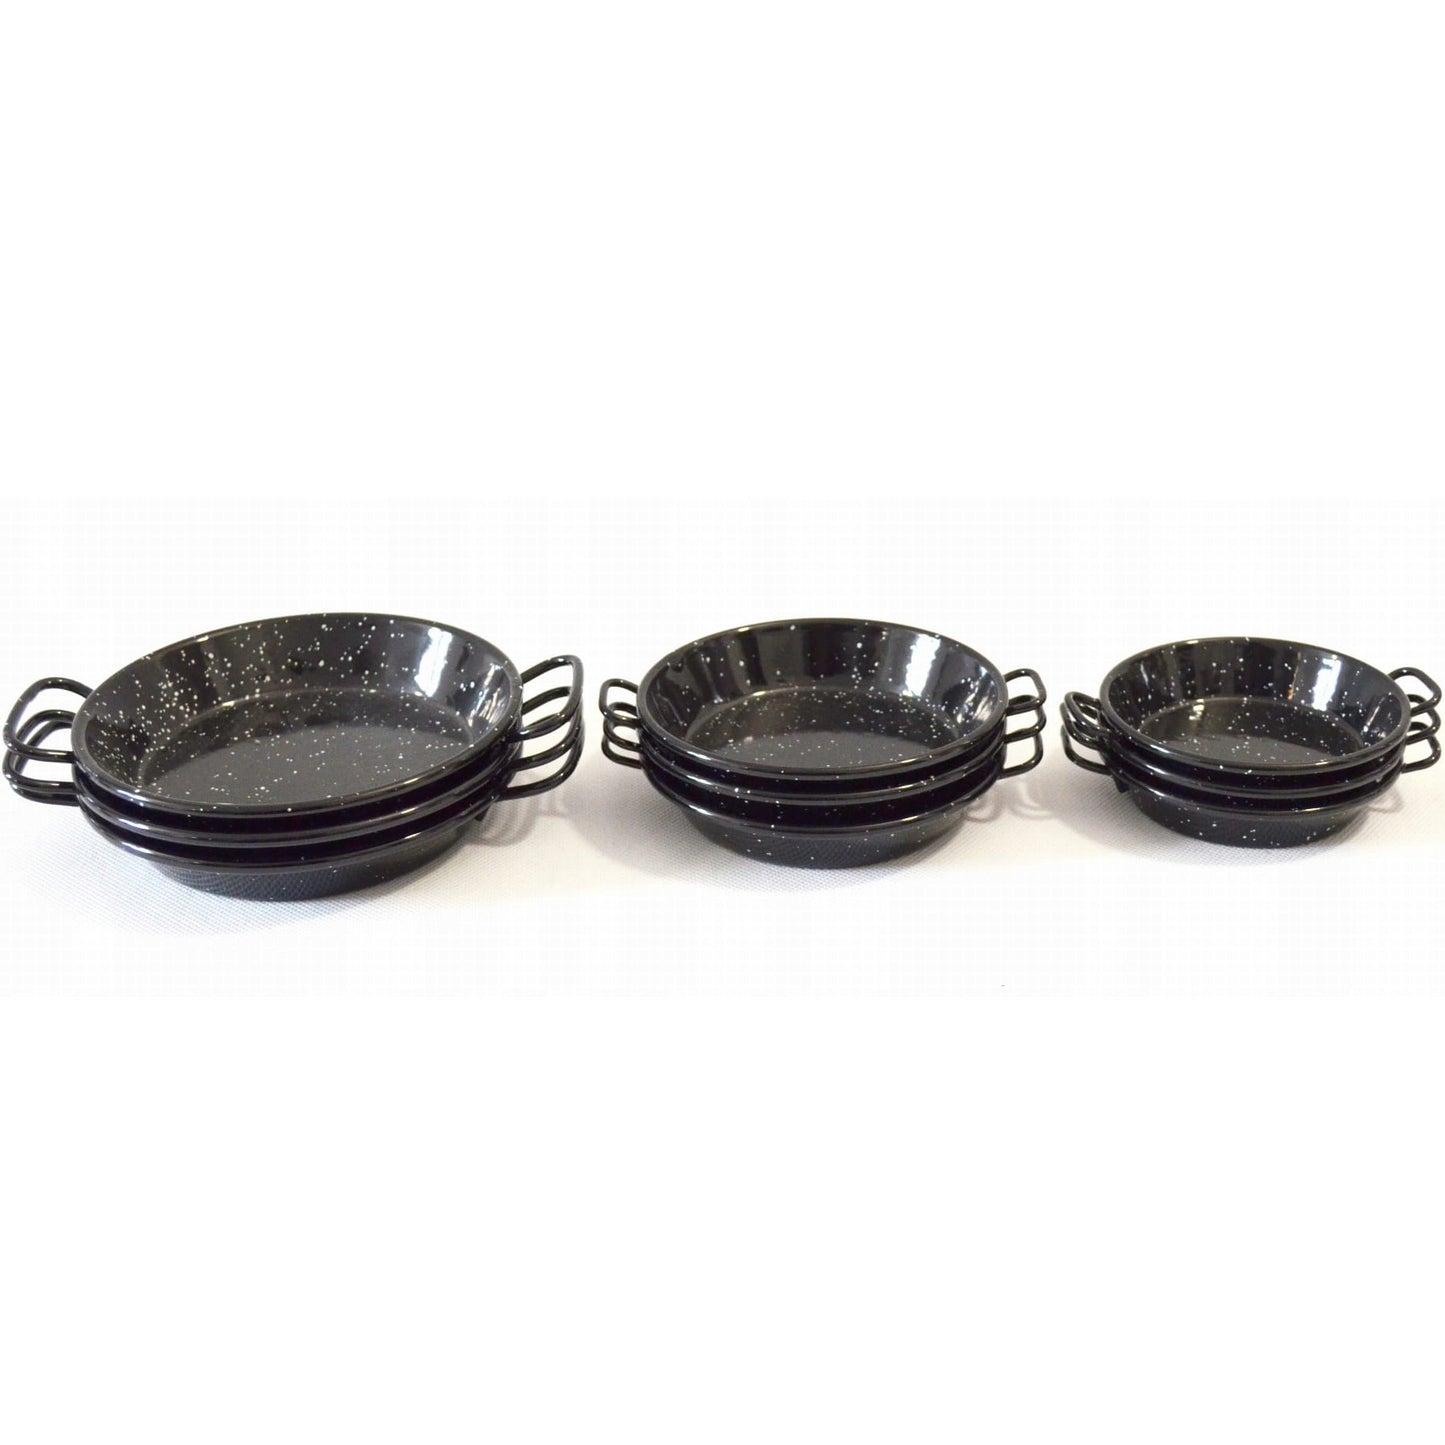 Set of 9 enamelled carbon steel paella pans - 3 pans 10cm, 3 pans 12cm, 3 pans 15cm *COMING SOON*